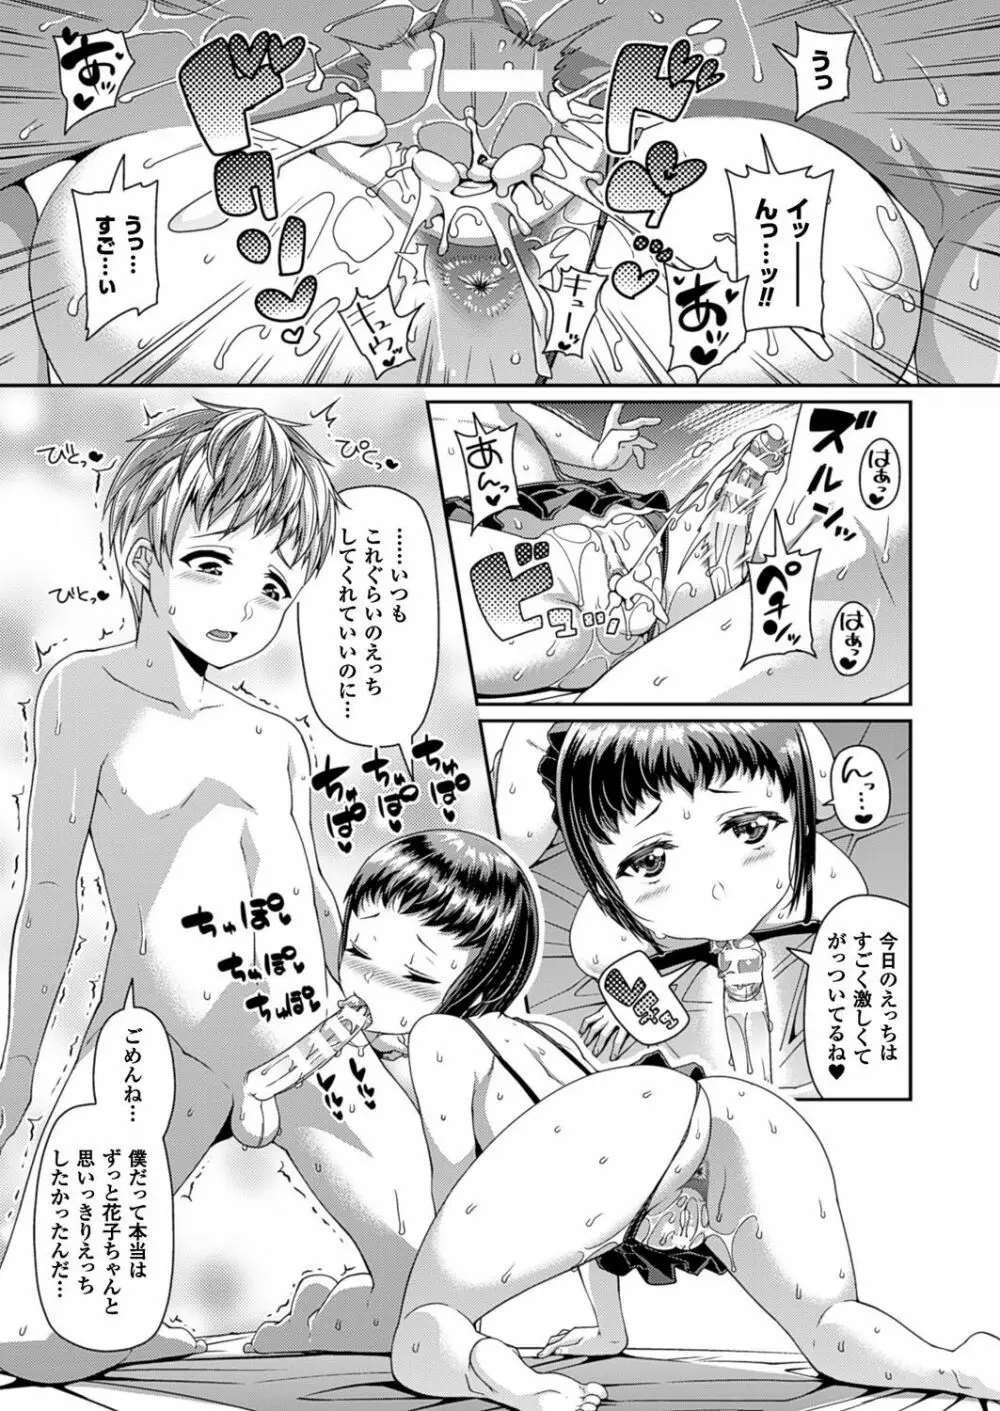 Toshi Densetsu Series Ch. 01-03 62ページ